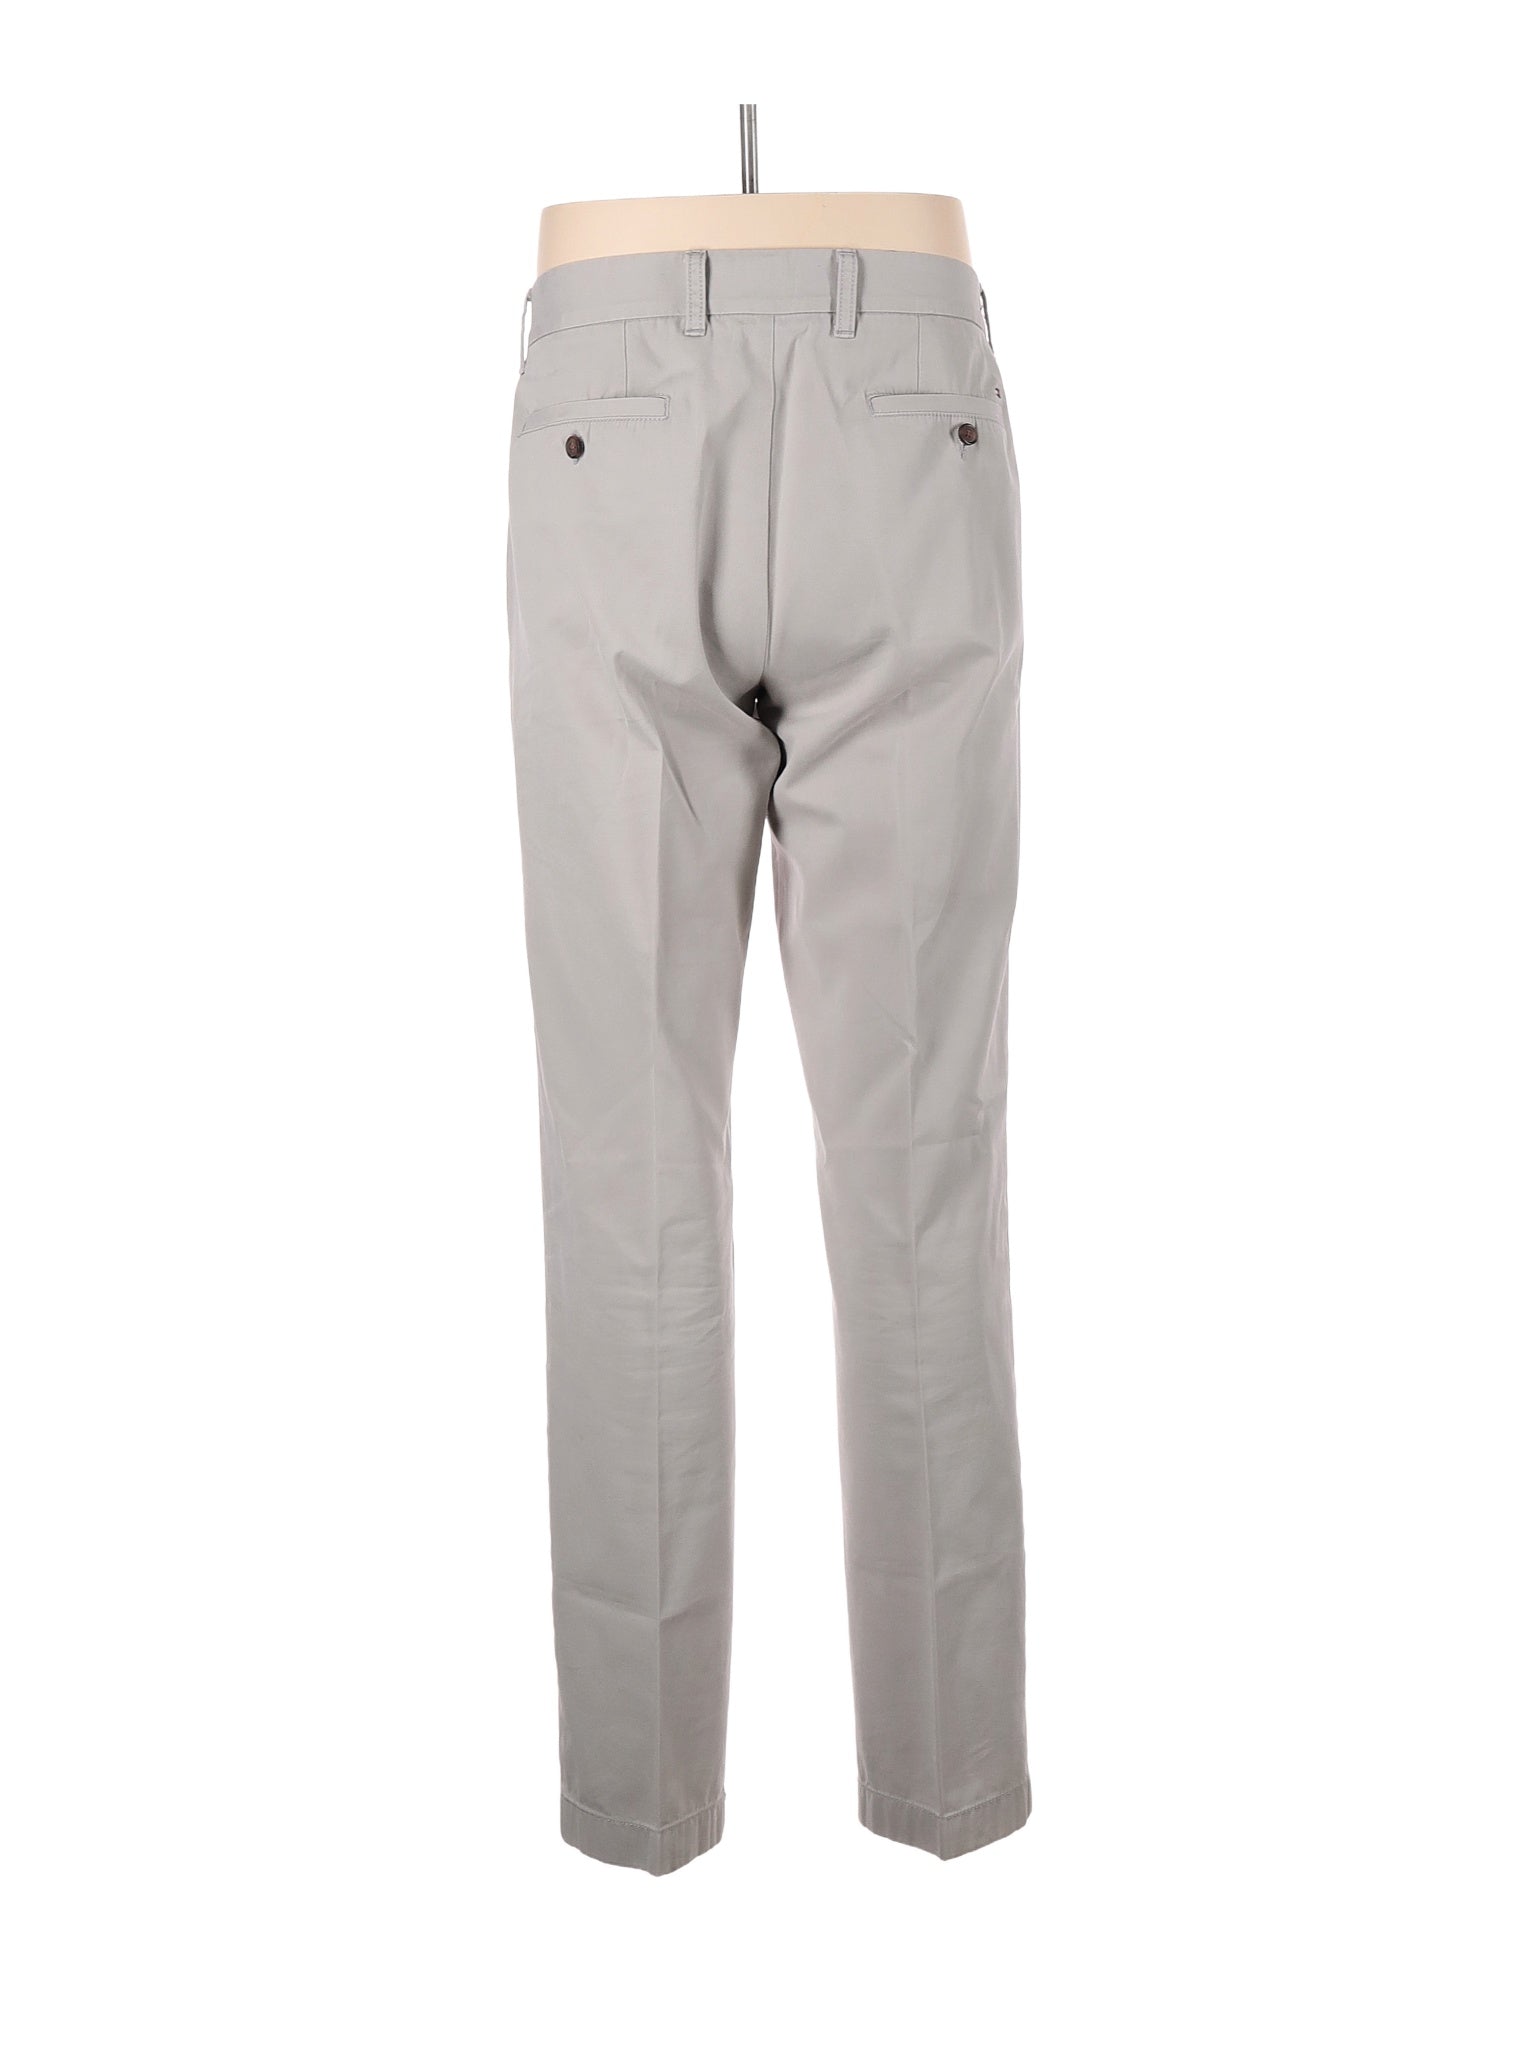 Khaki/Chino Pants size - 34 (W34 L34)